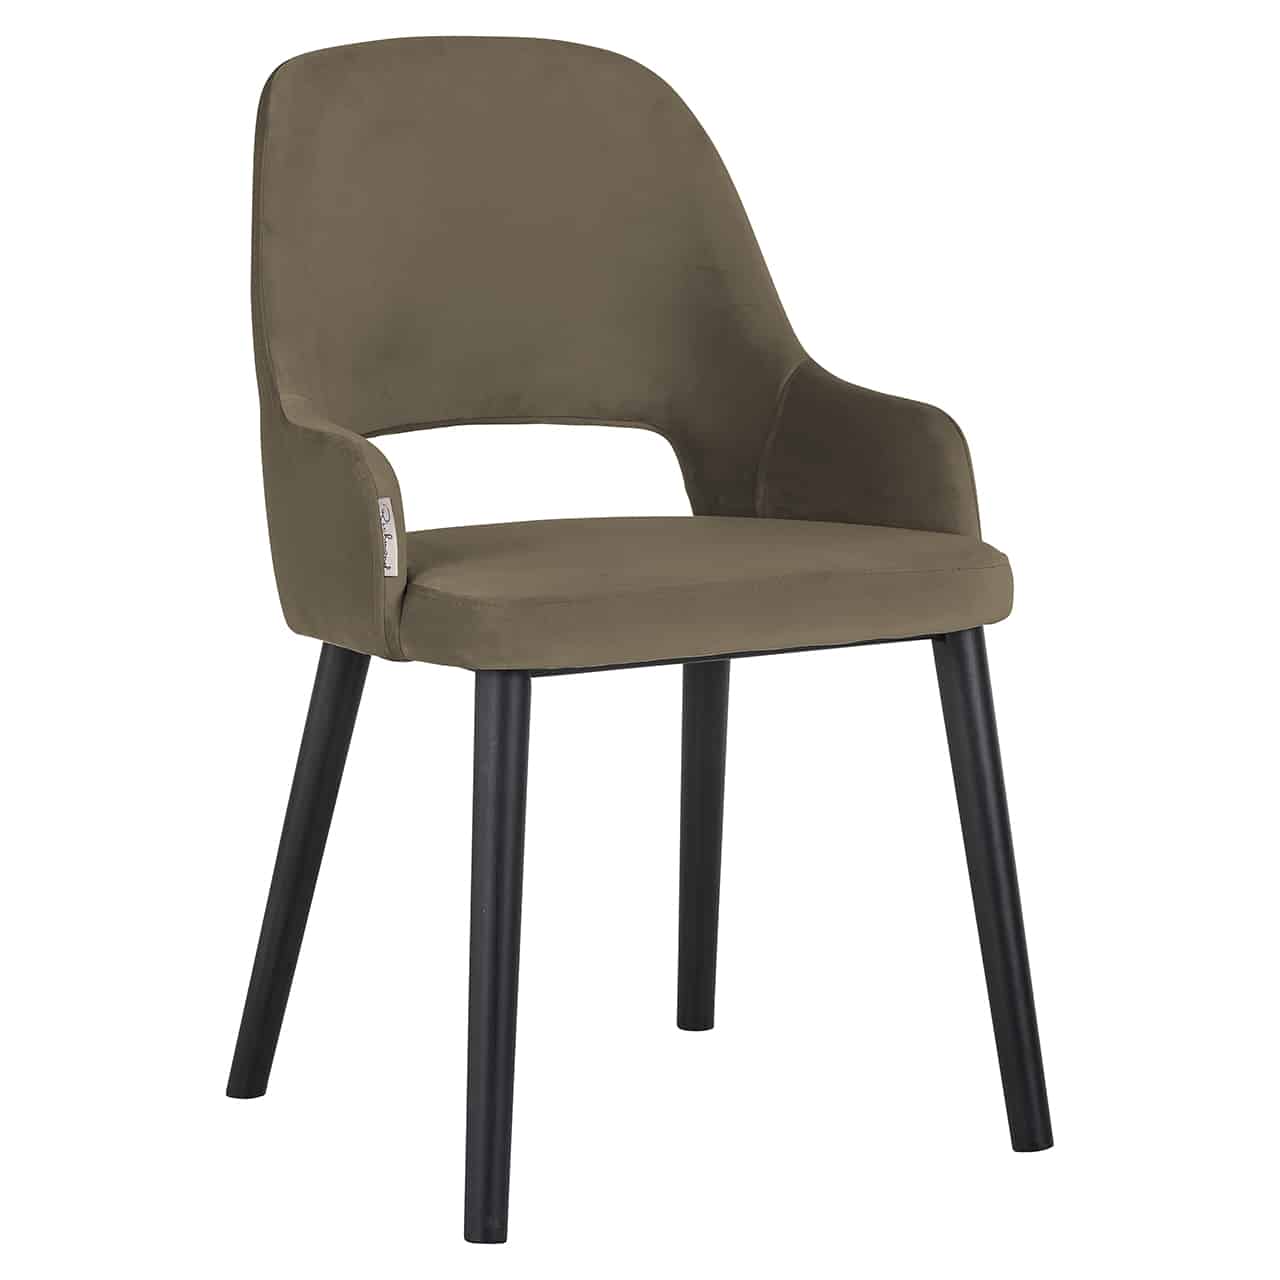 Grau-güner Stuhl, mit angedeuteten Armlehnen  und offenem Spalt im unteren Bereich der Rückenlehne; relativ dicke, leicht nach außenstehende runde Beine in schwarz.